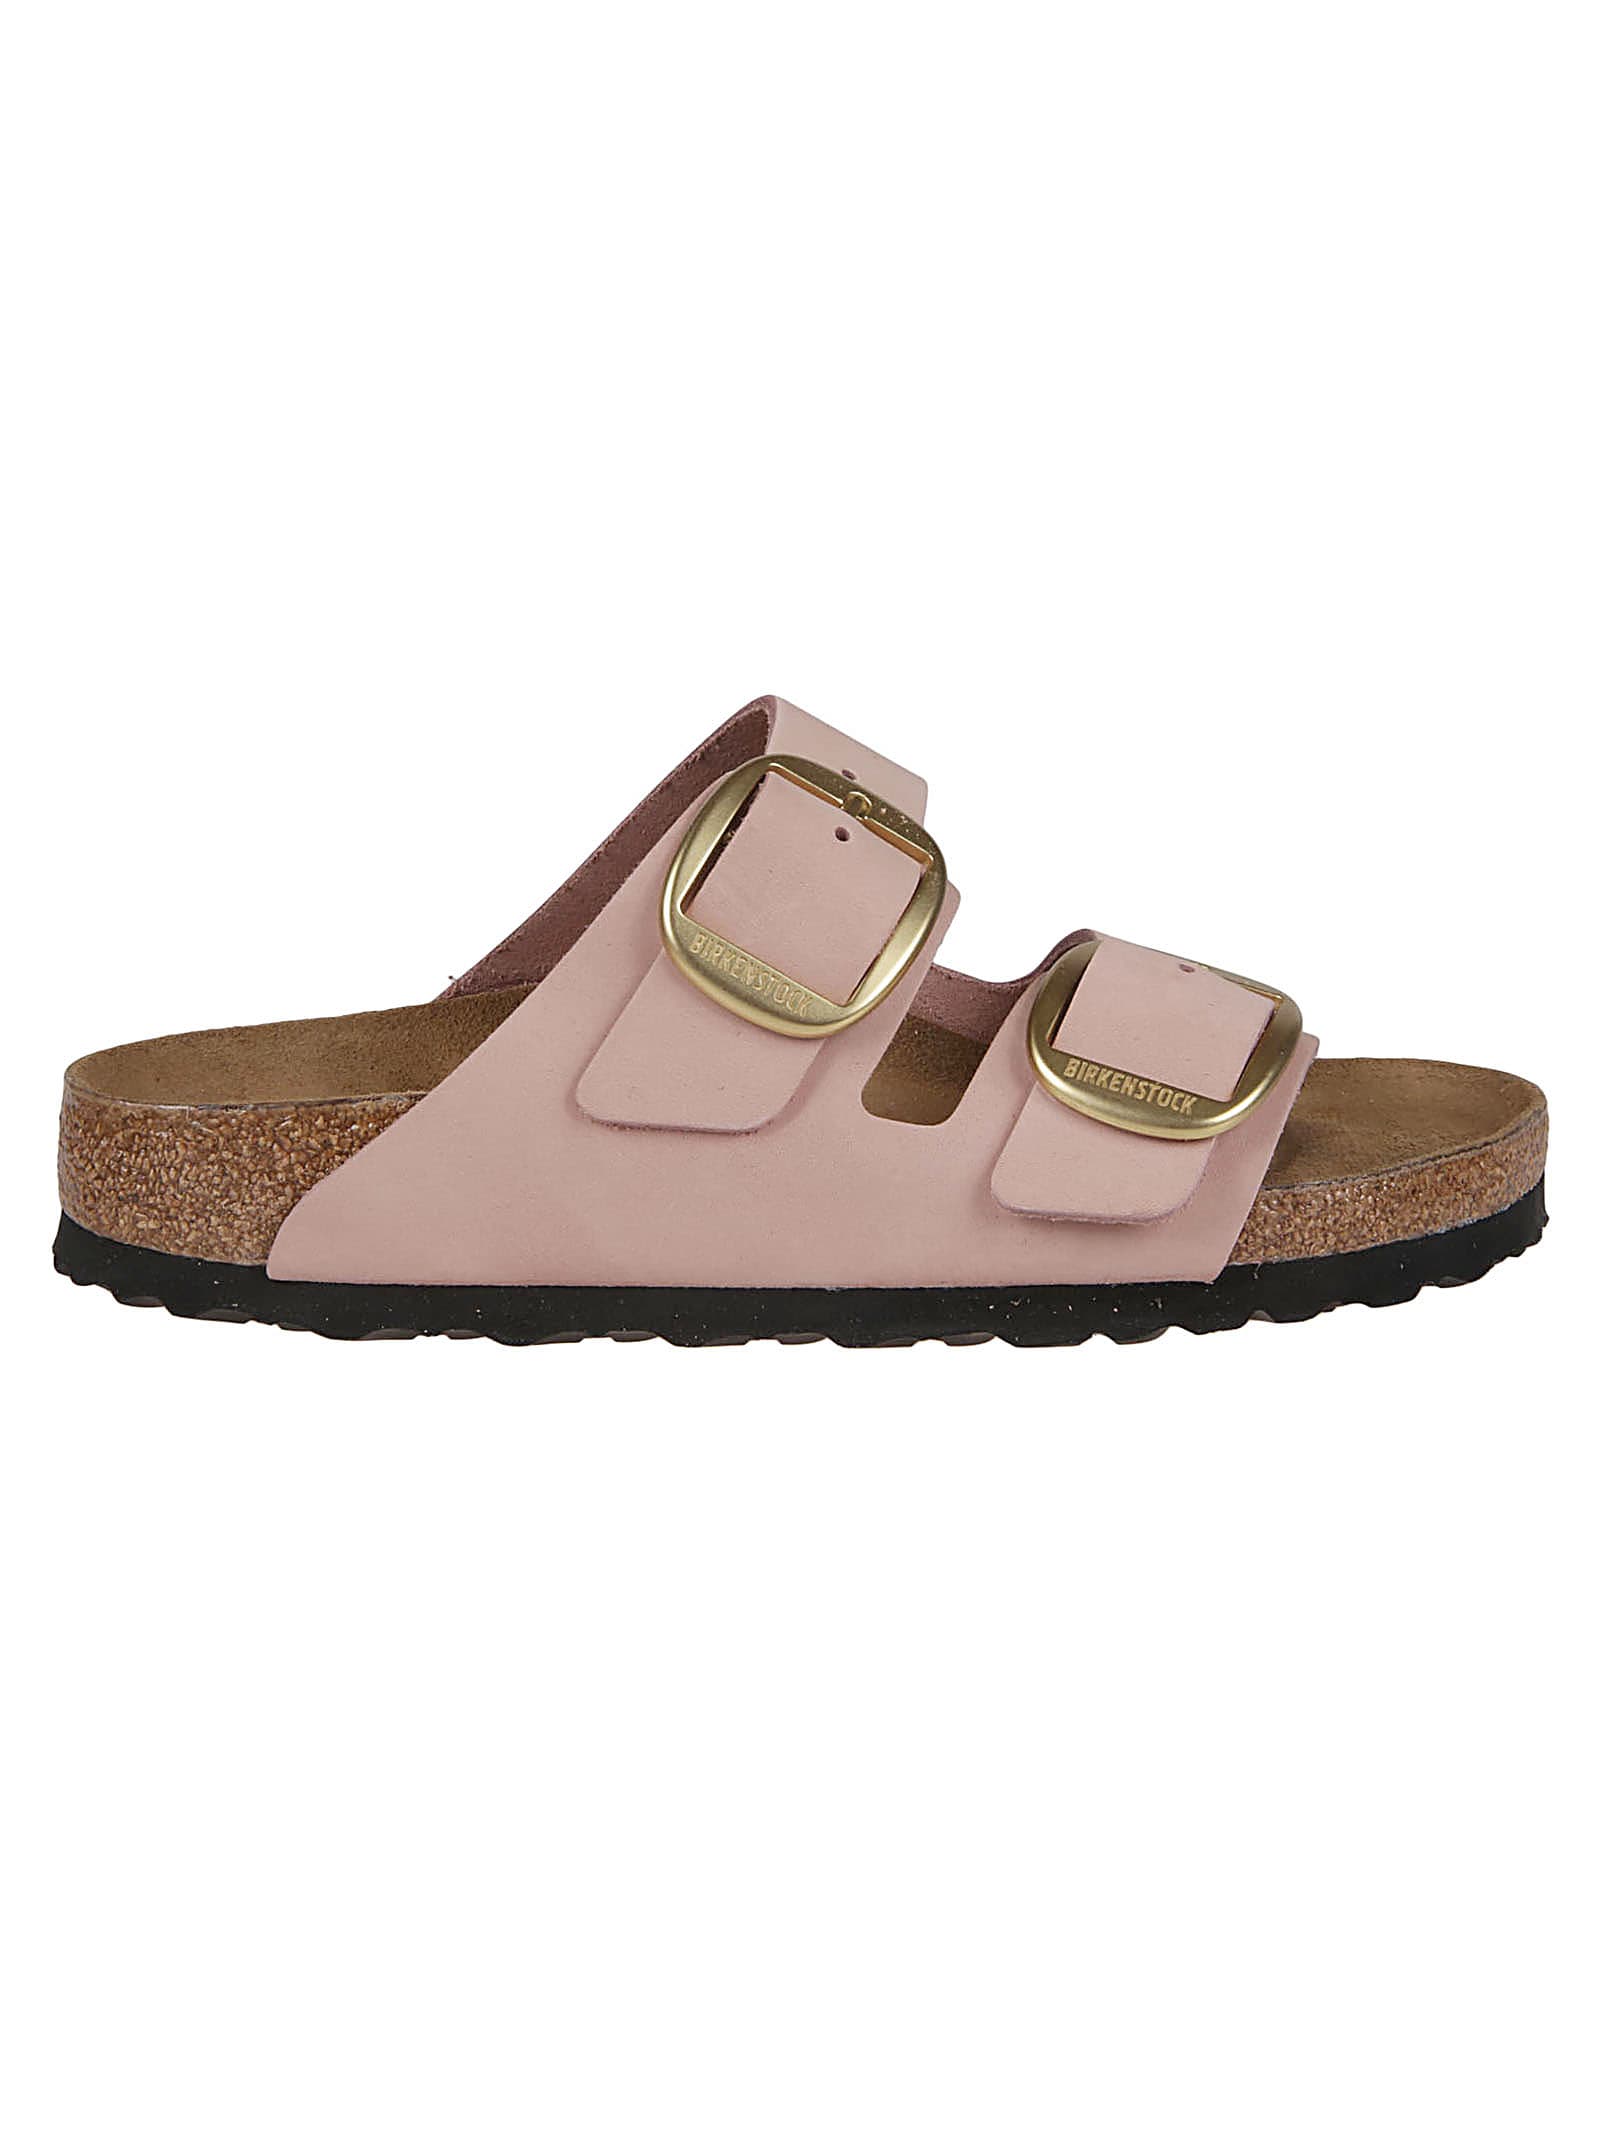 Birkenstock Arizona Big Buckle Sandals In Soft Pink